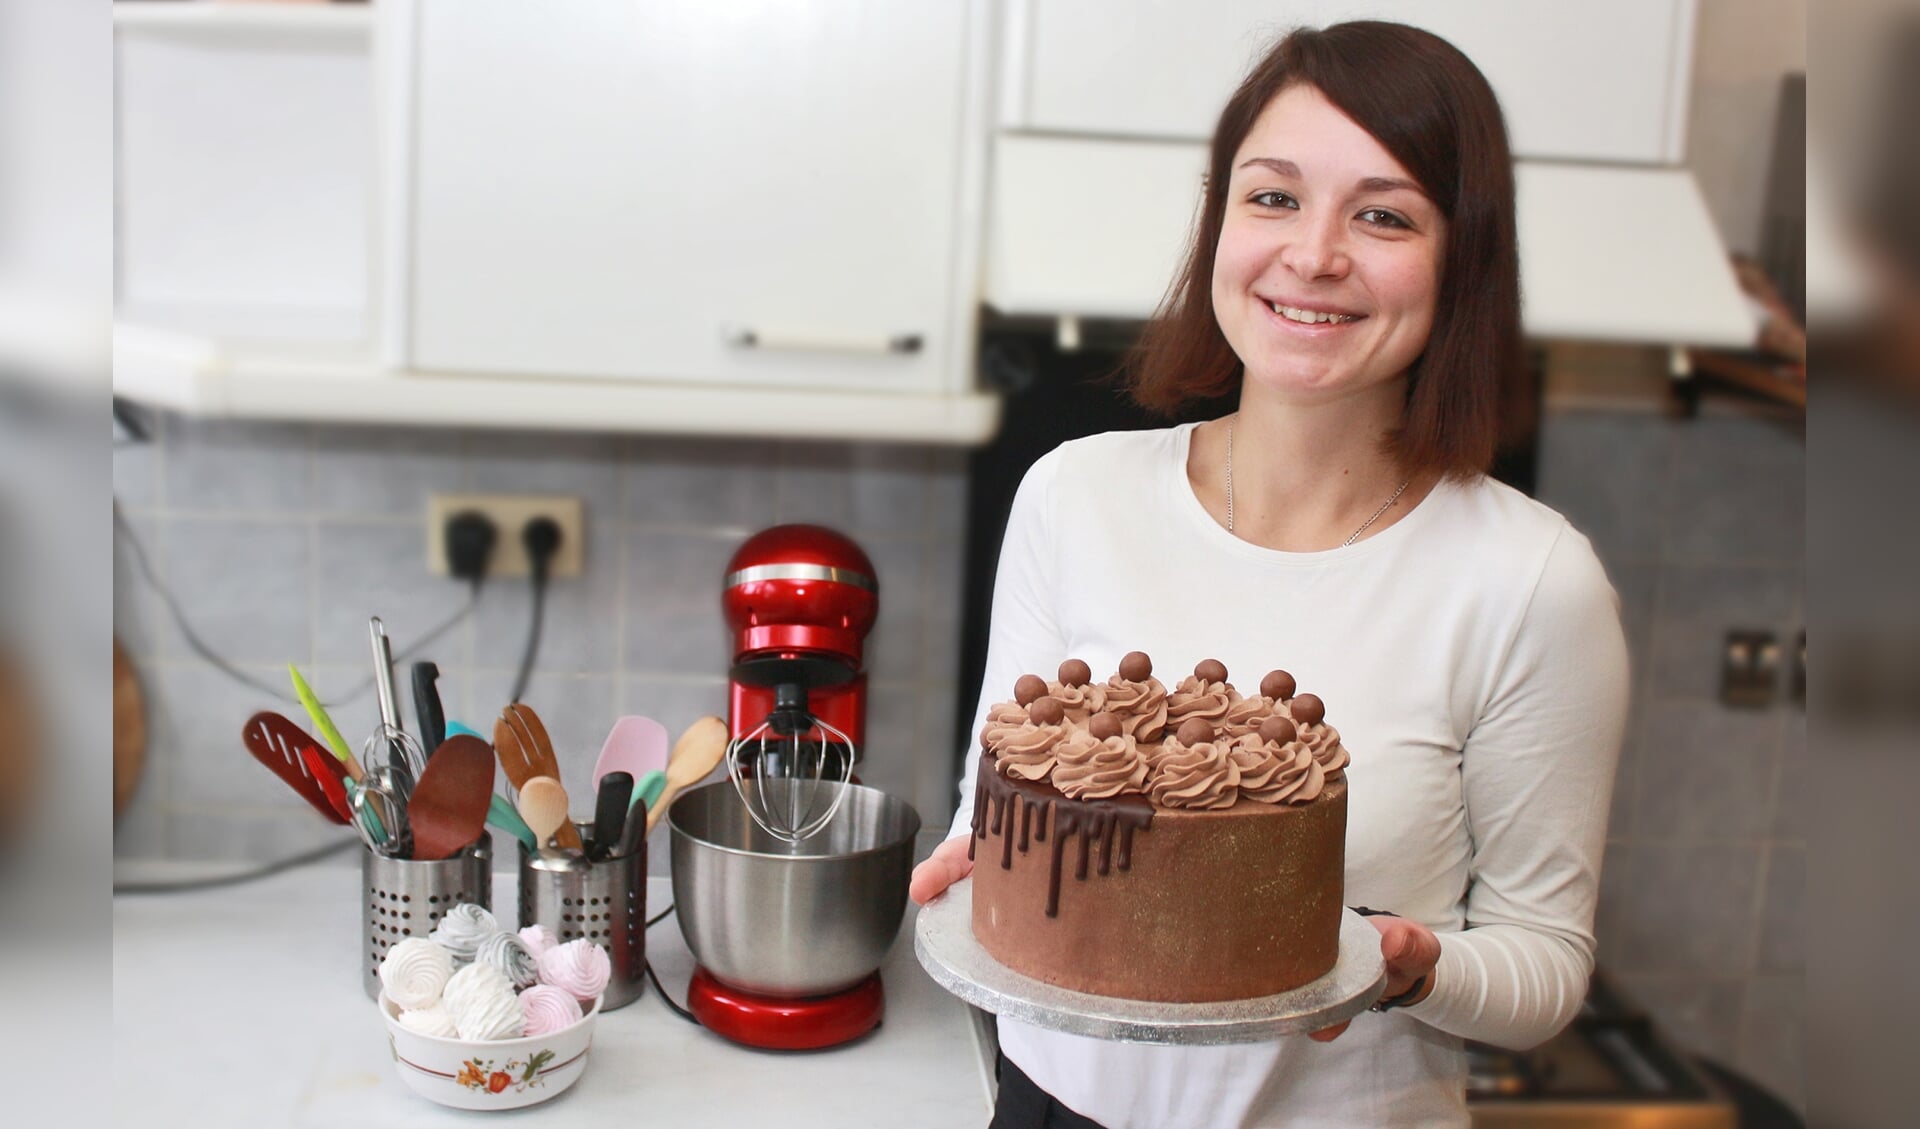 Yulia Koevoets bakt nog maar sinds een jaar! FOTO ELS ROMMERS